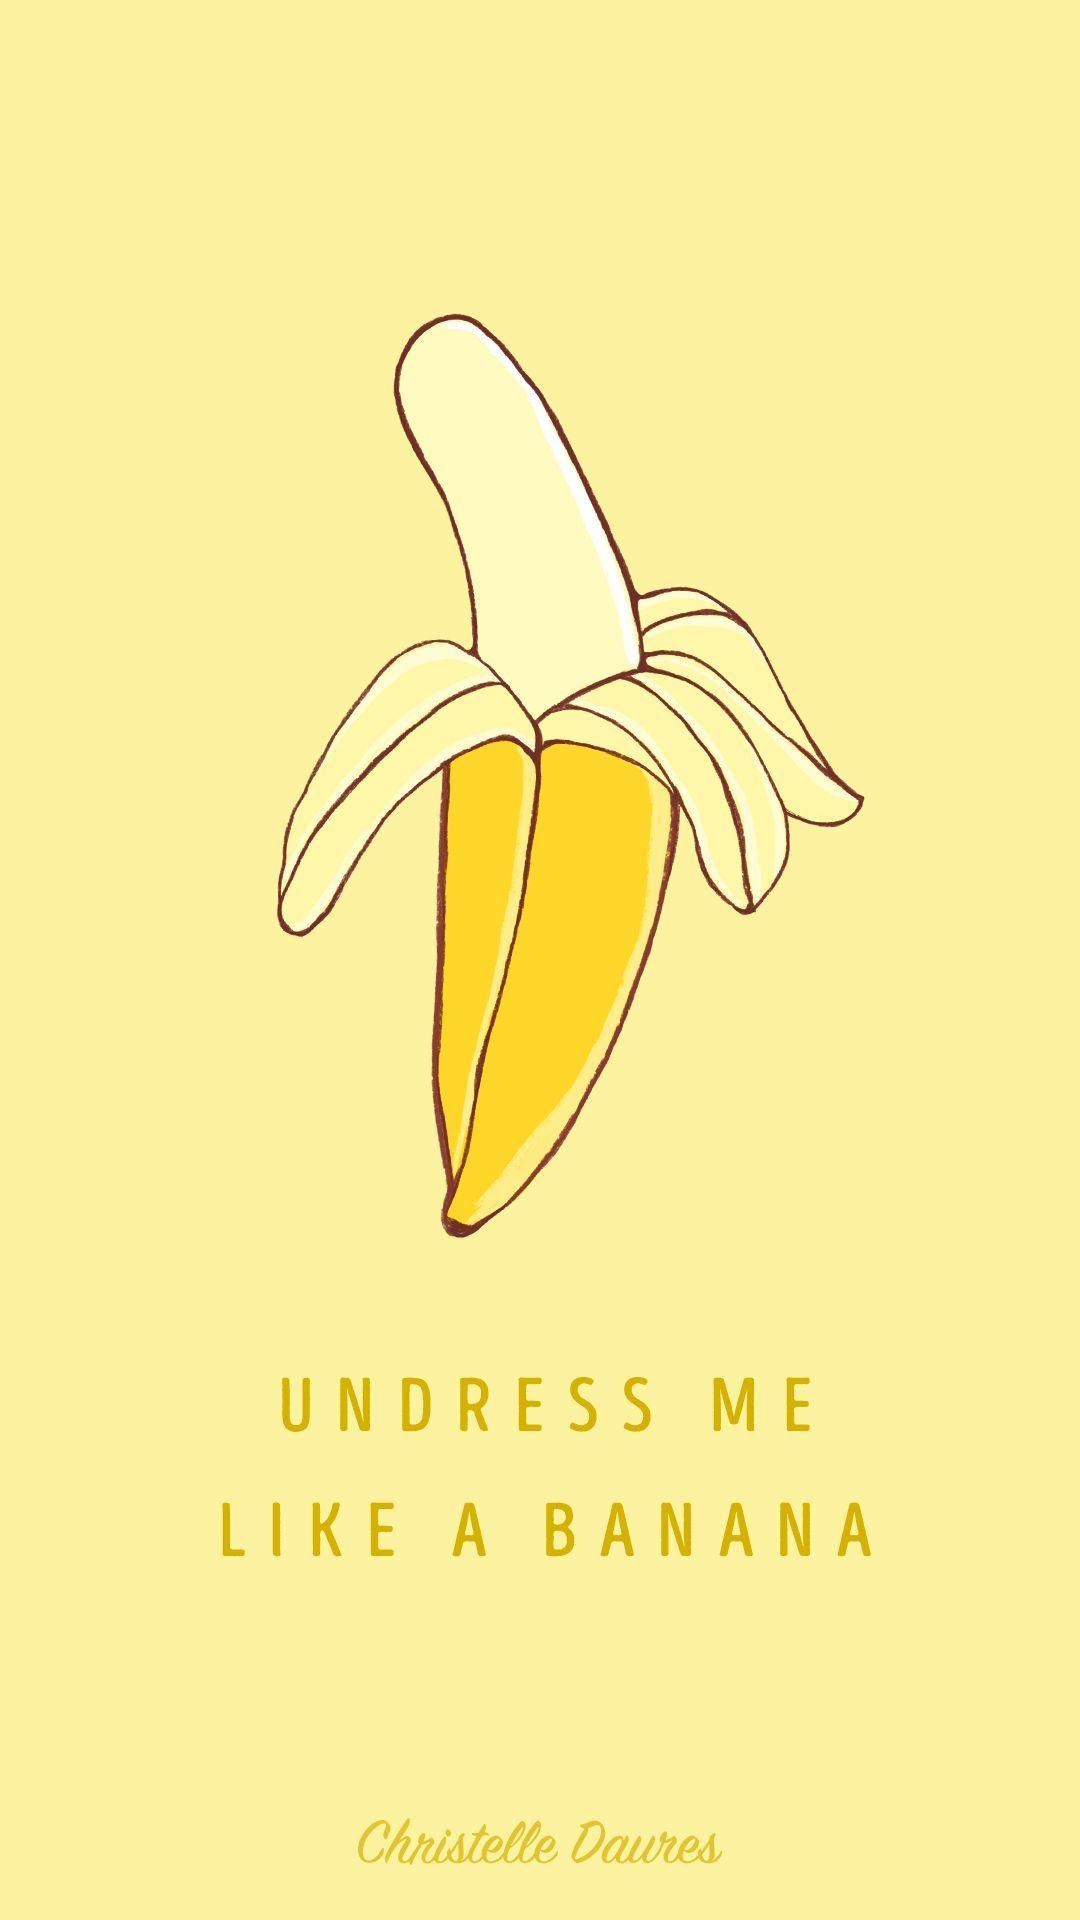 Iphone 6+ Undress Me Like A Banana Wallpaper Fond Ecran Dessin Pins